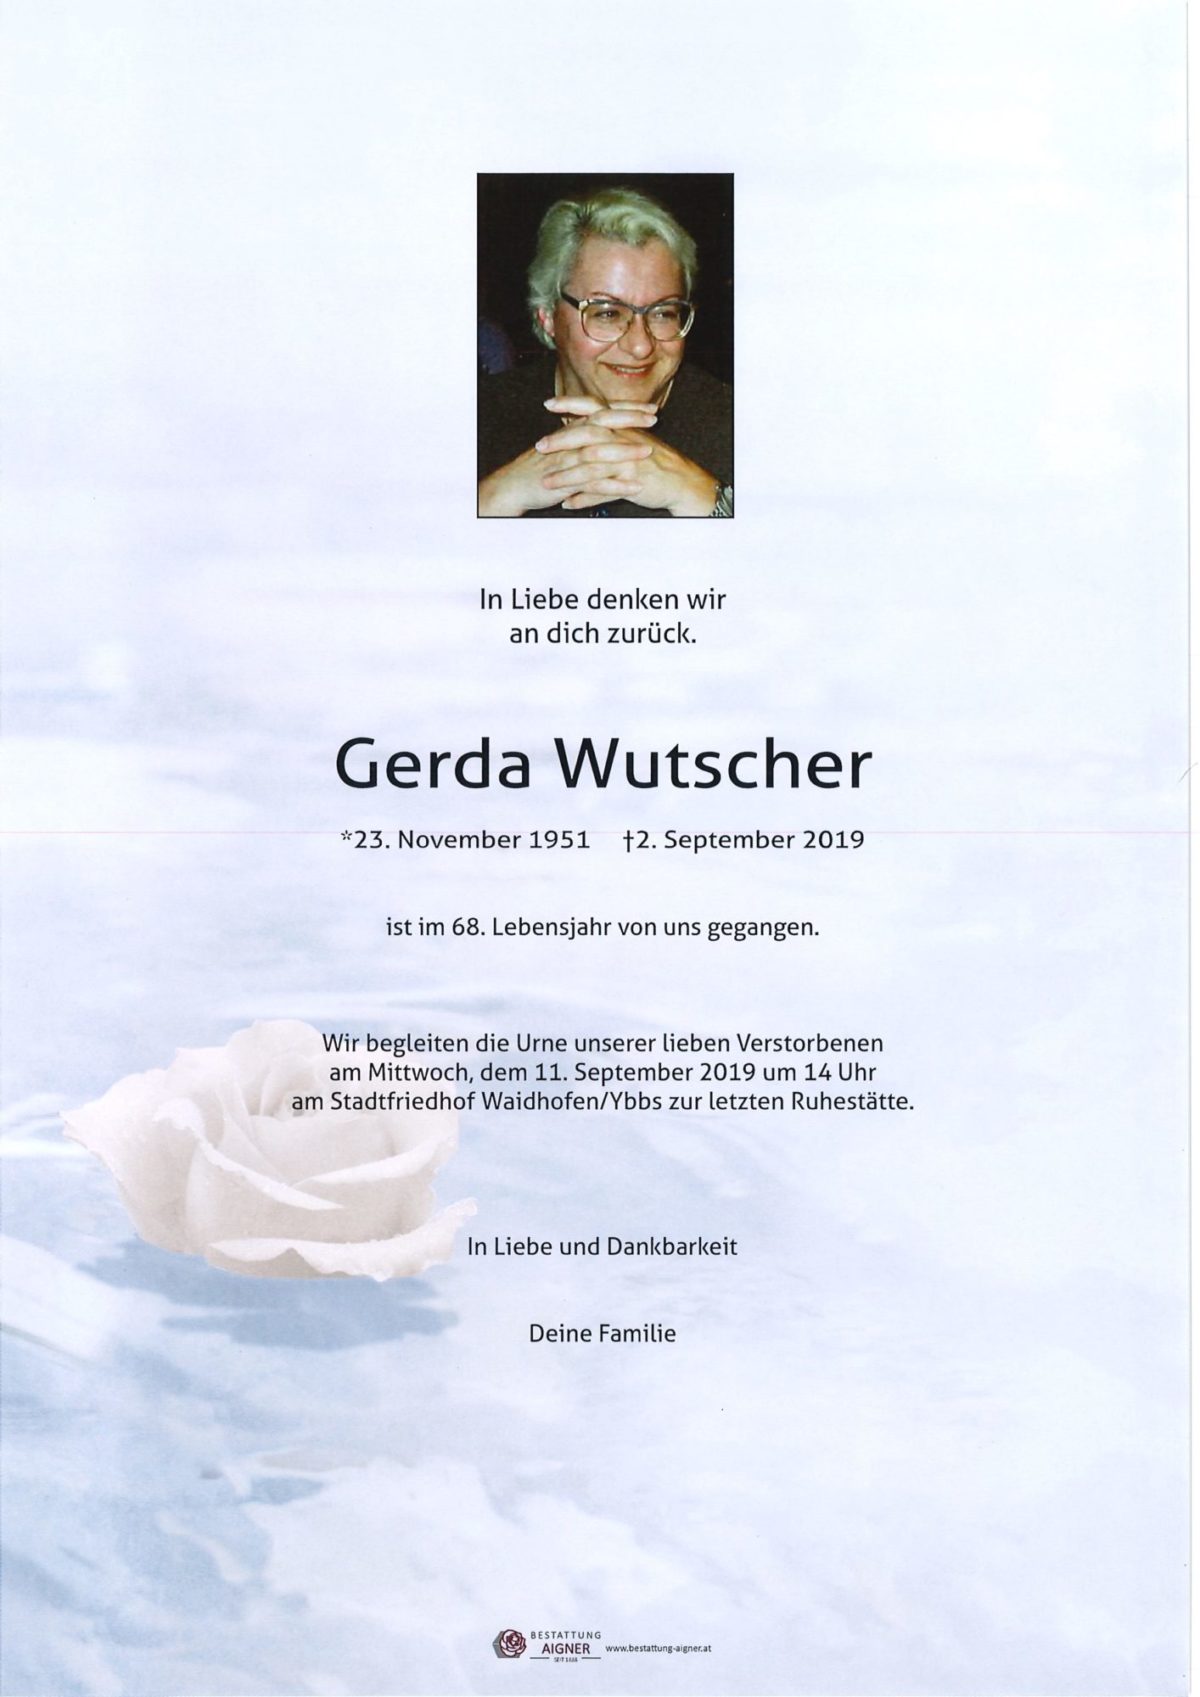 Gerda Wutscher